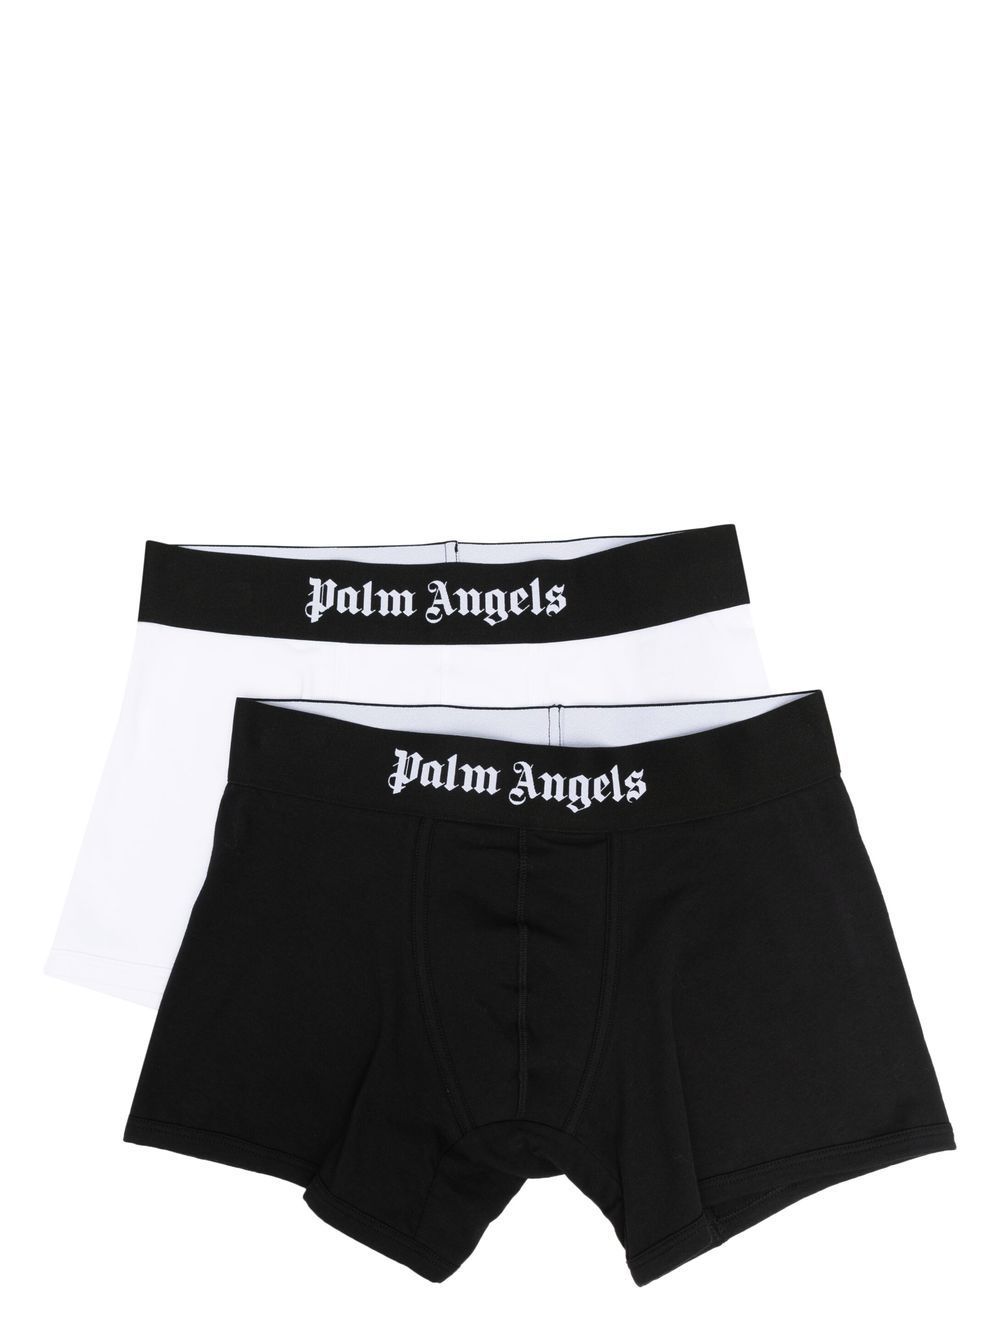 PALM ANGELS - Pack de boxer